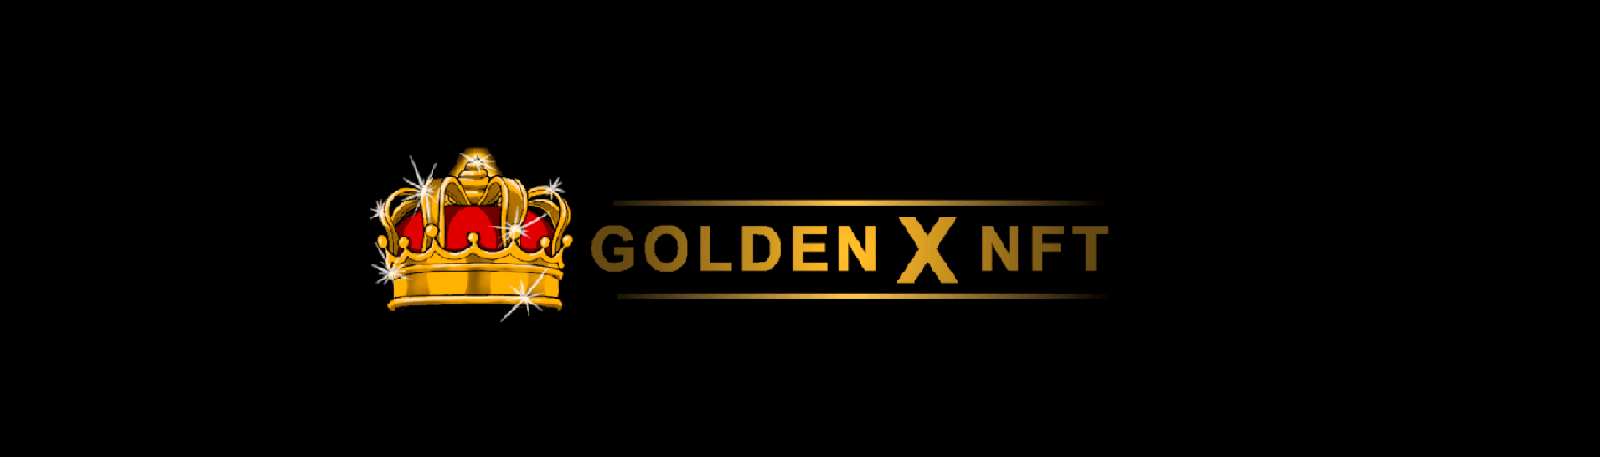 GoldenXNFT banner